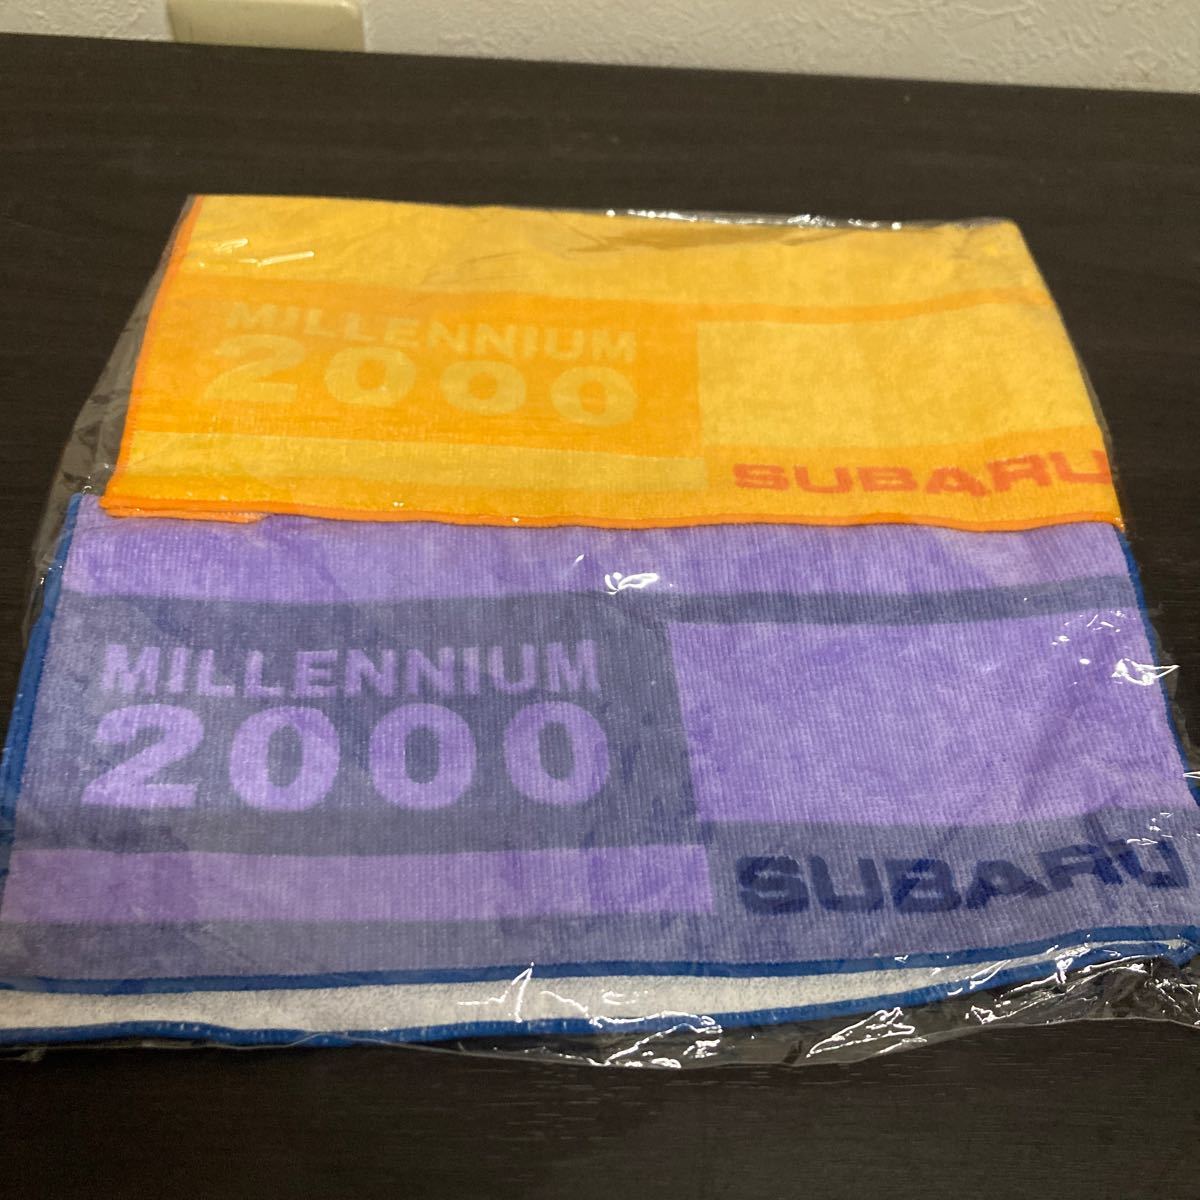  not for sale Subaru towel 2 pieces set MILLENNIUM 2000